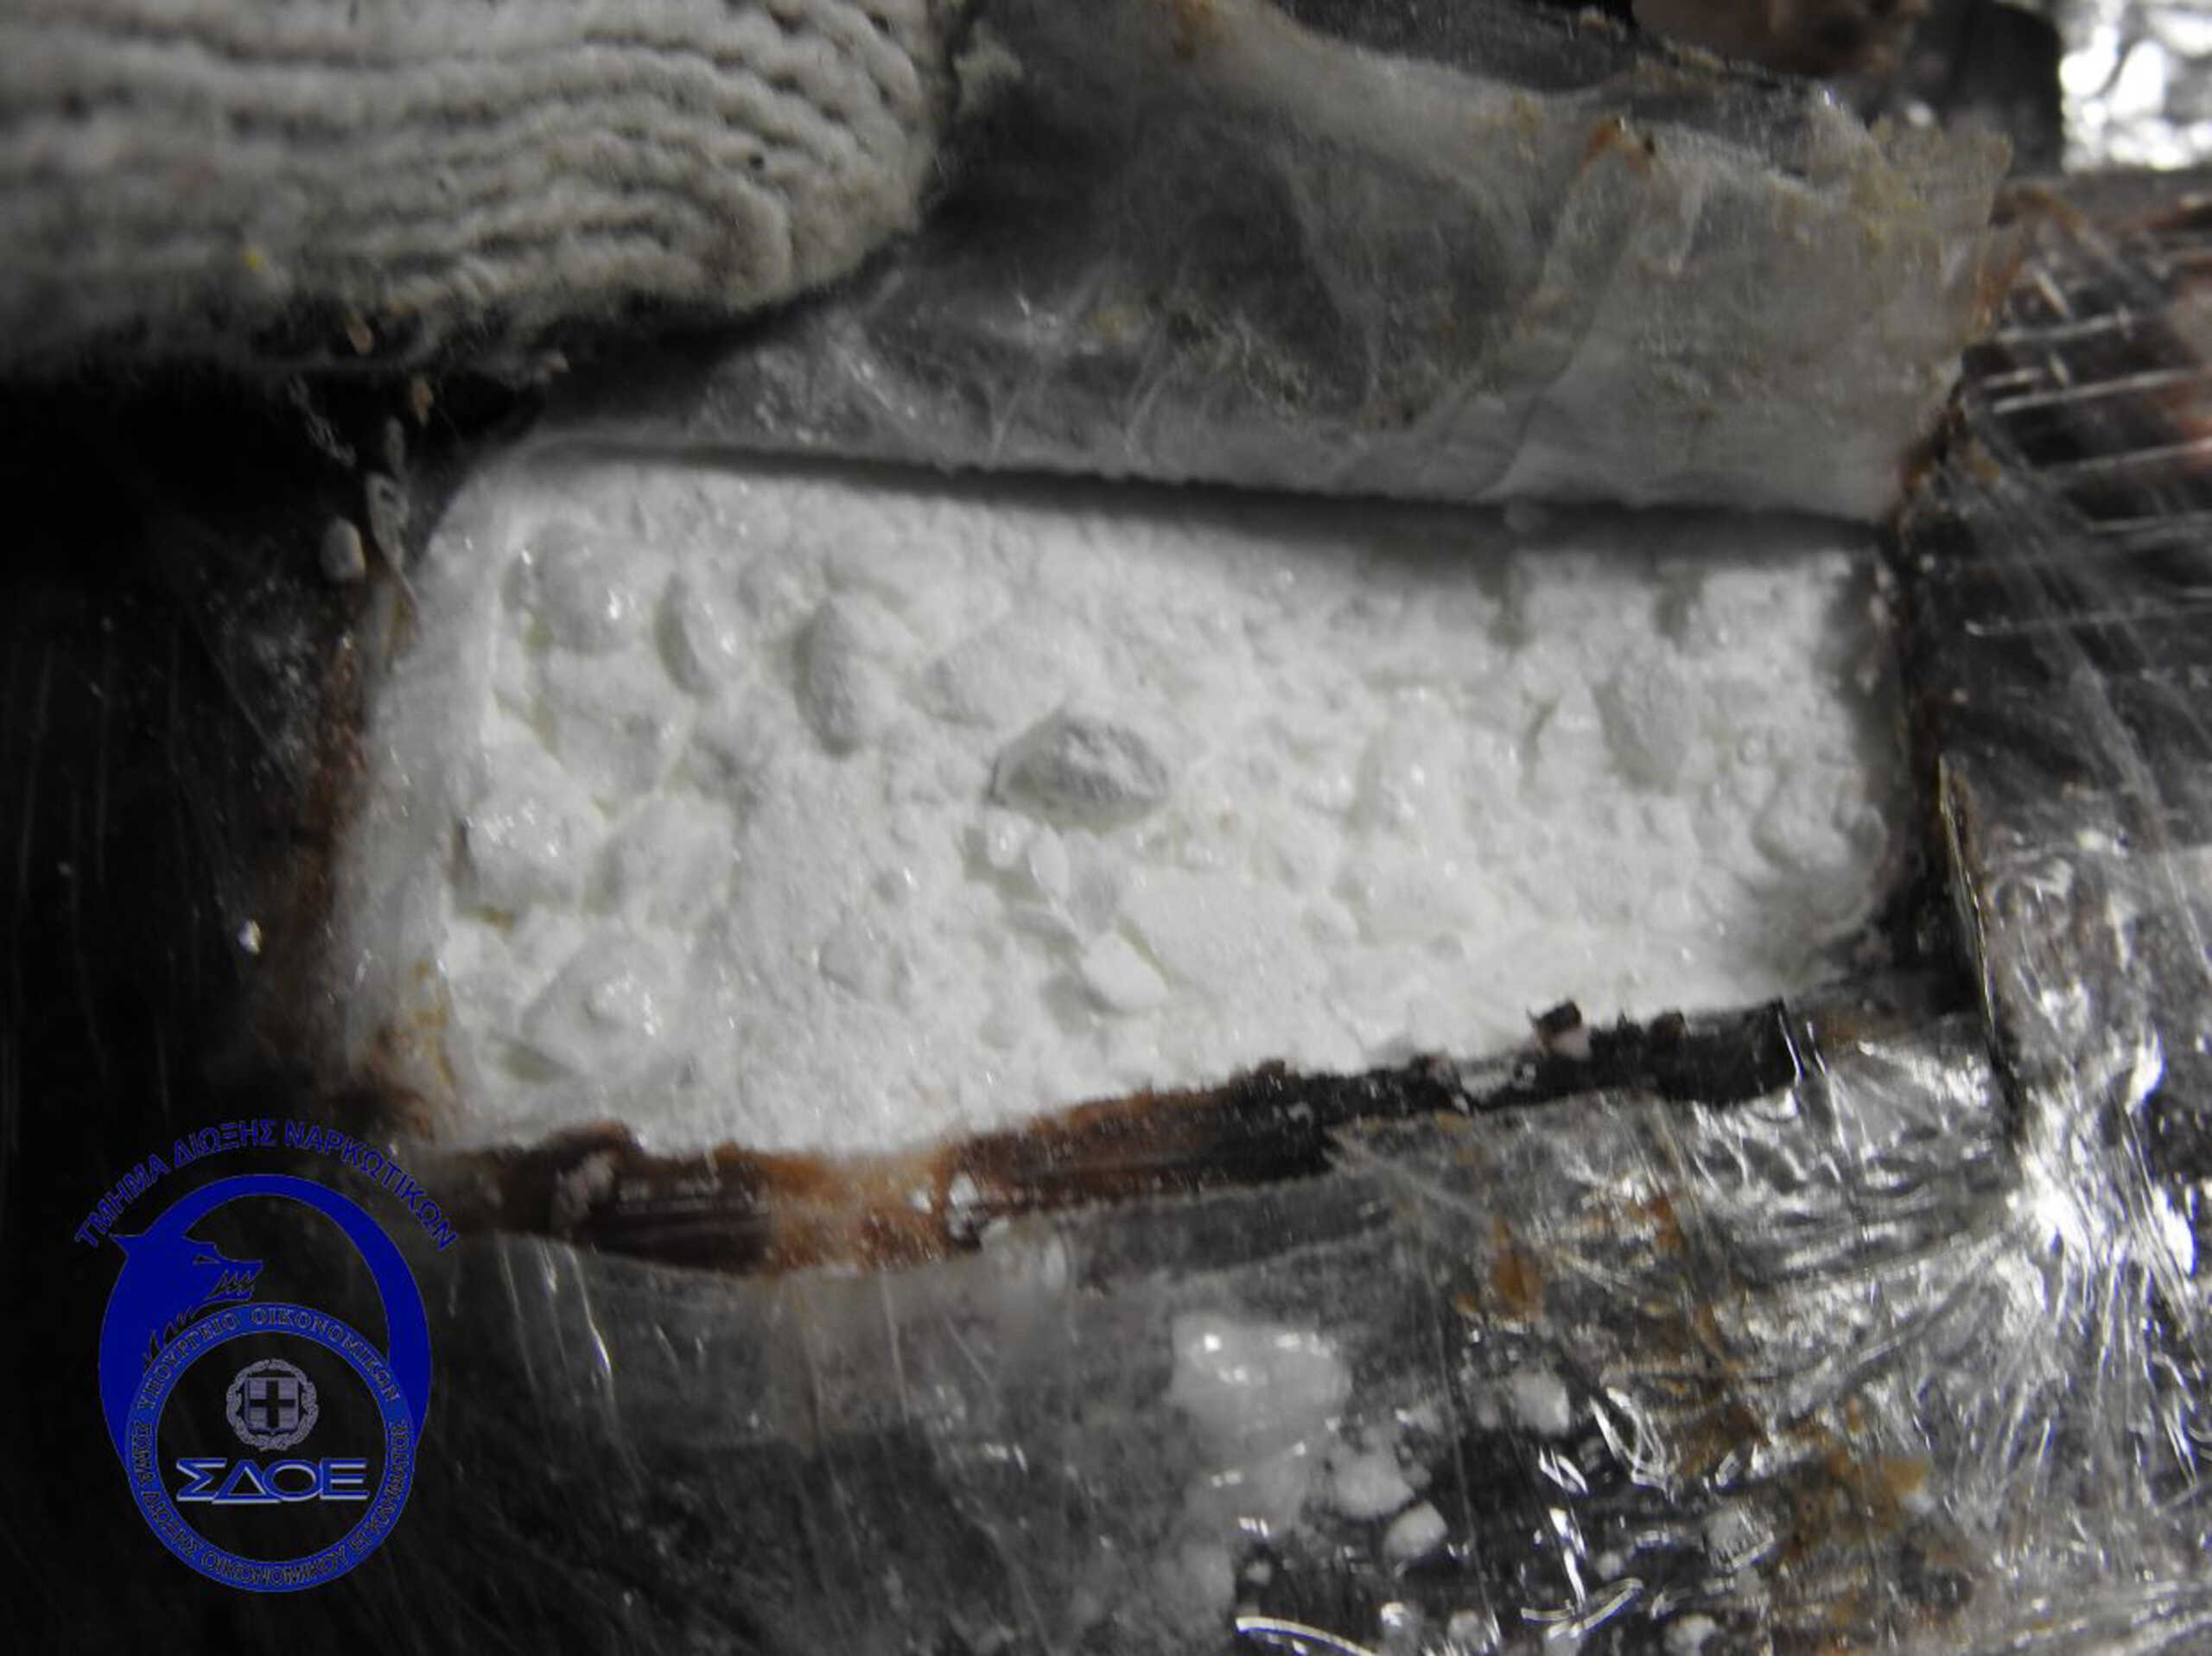 Ηράκλειο: Δύο συλλήψεις 21χρονων για ναρκωτικά – Είχαν τρία κιλά κάνναβης και ποσότητα κοκαΐνης